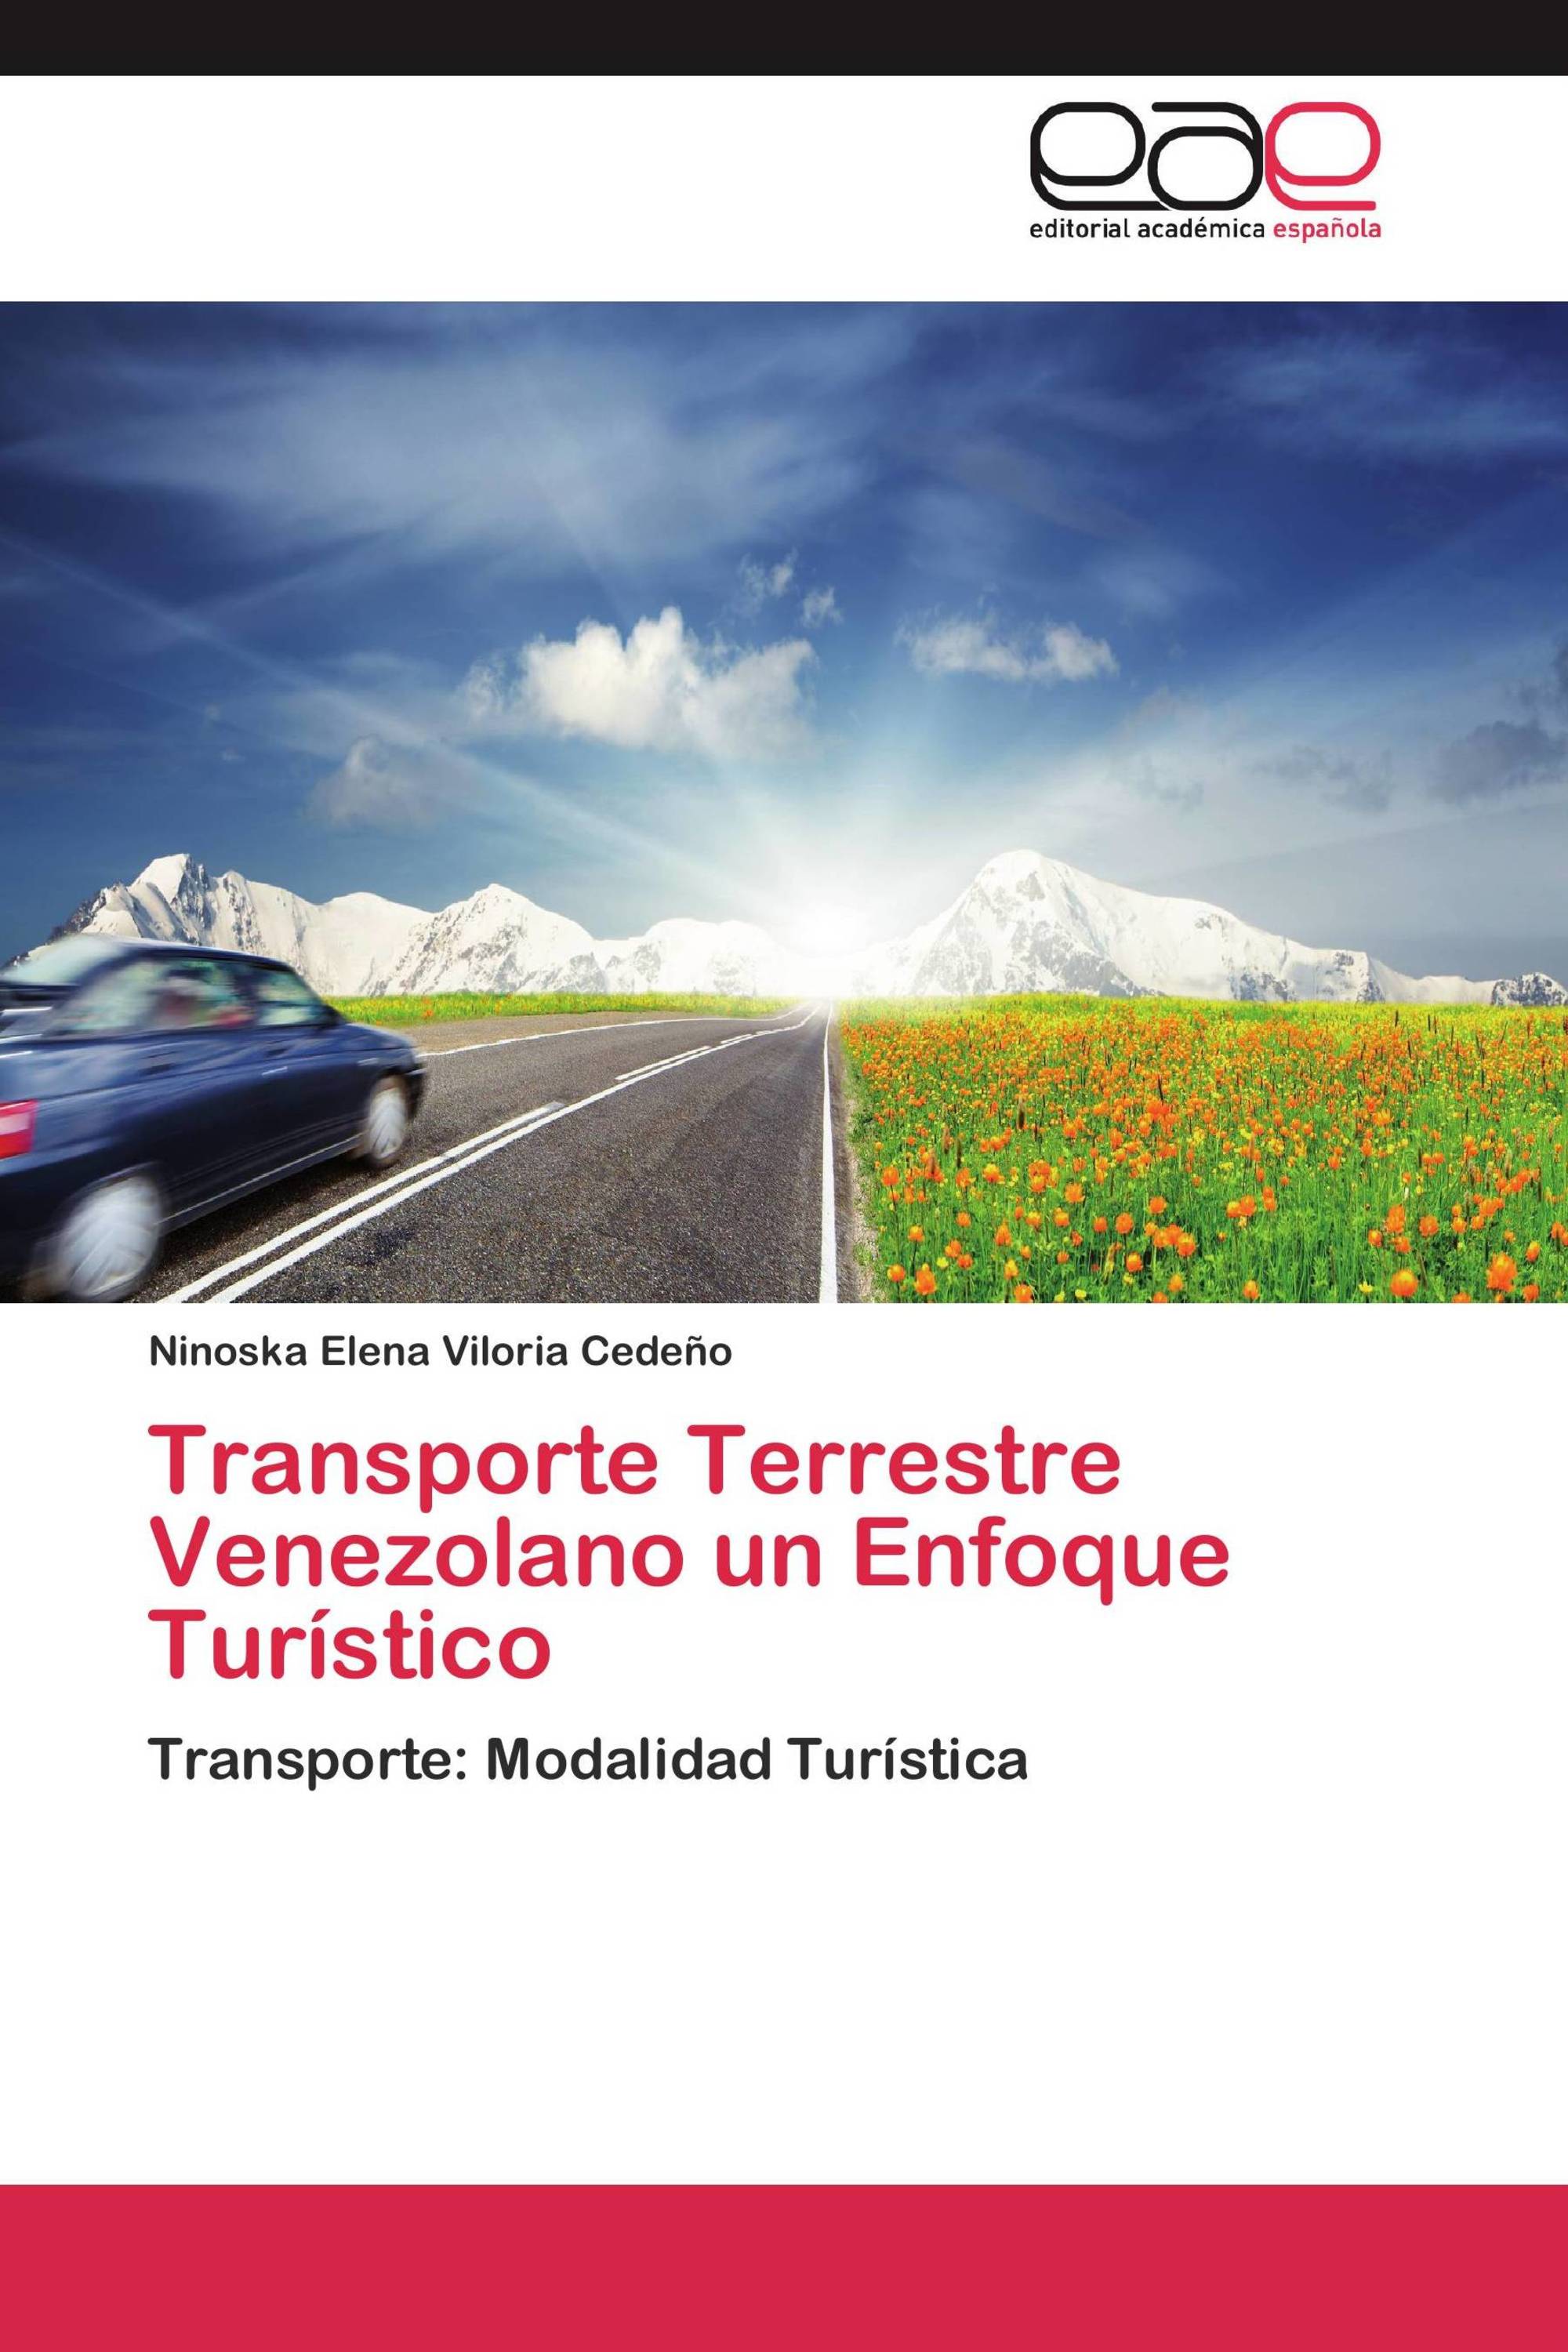 Transporte Terrestre Venezolano un Enfoque Turístico